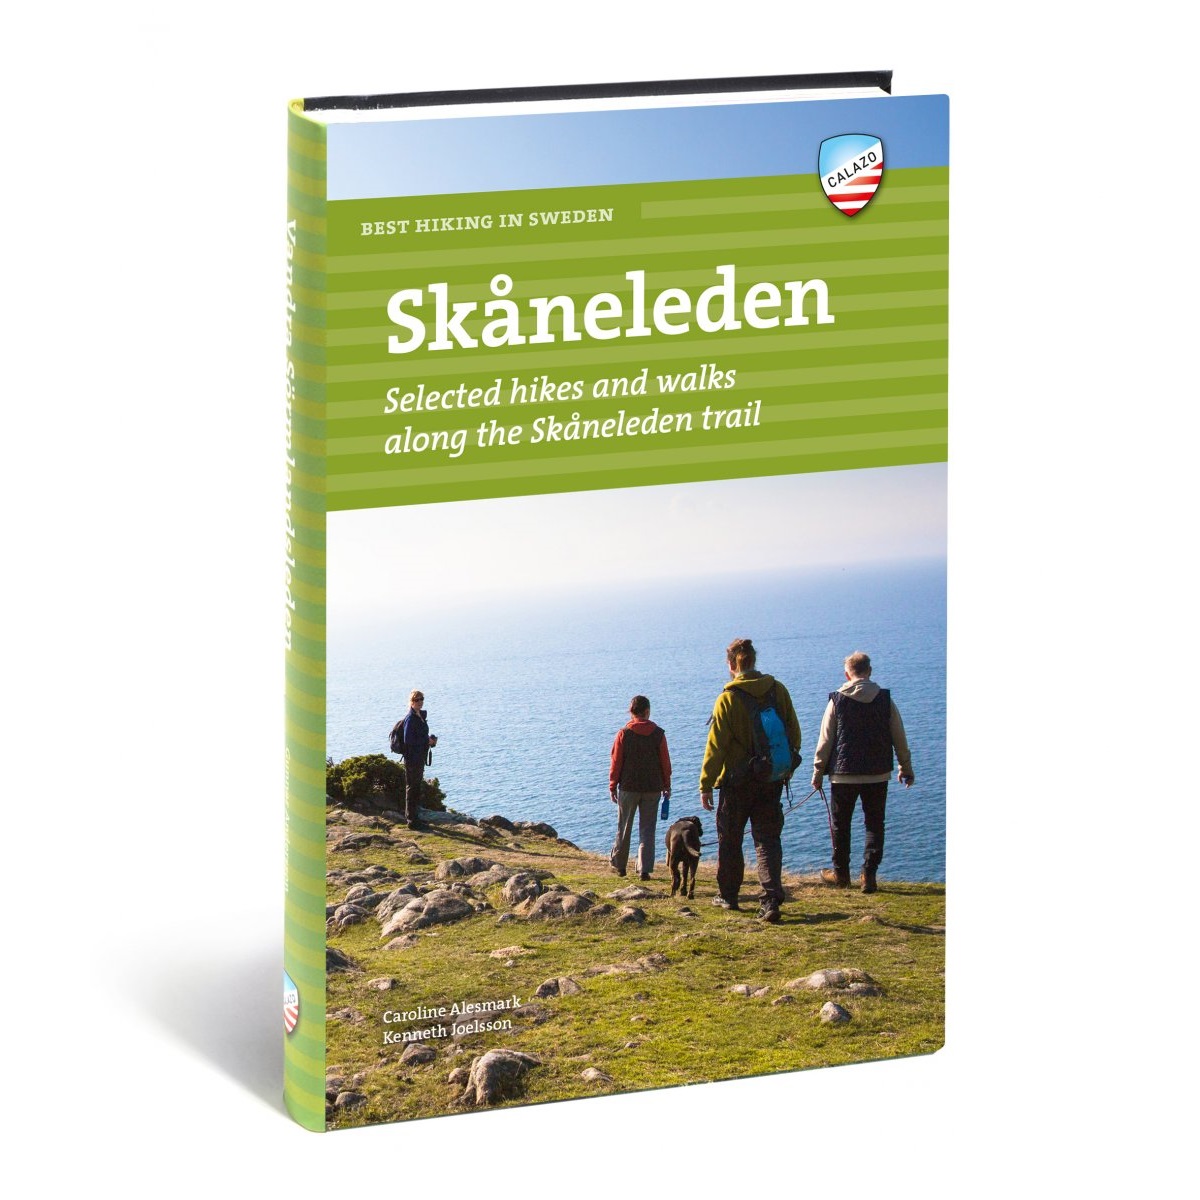 Best hiking in Sweden: Skåneleden NoColour